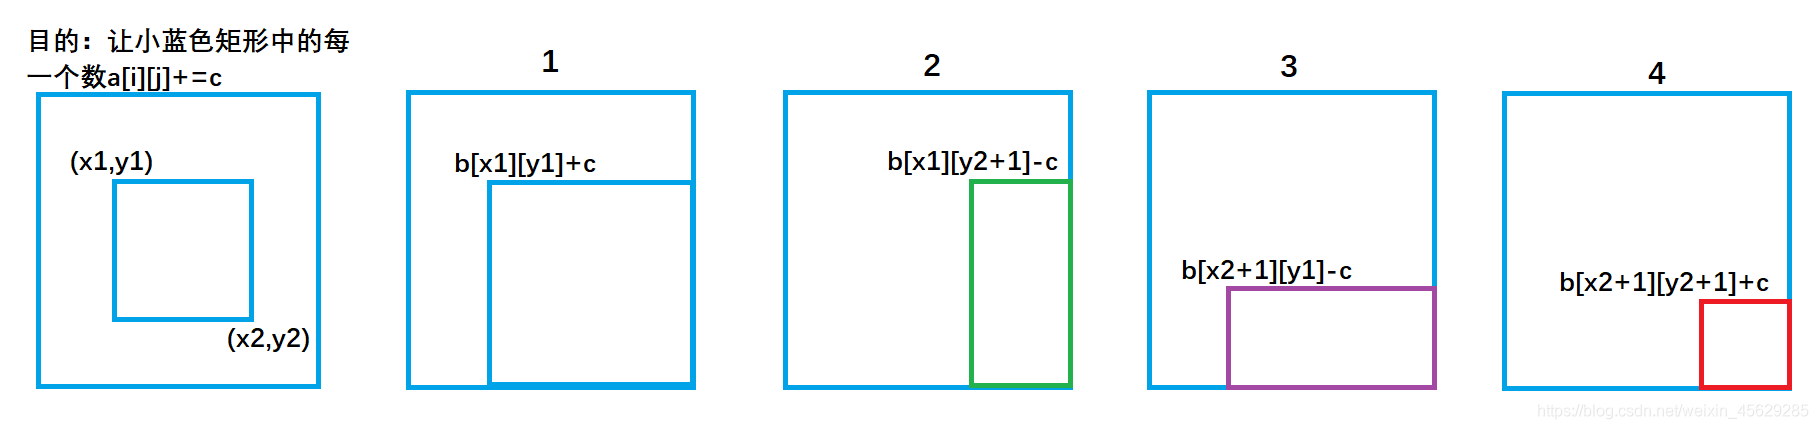 C++前缀和与差分算法的示例分析